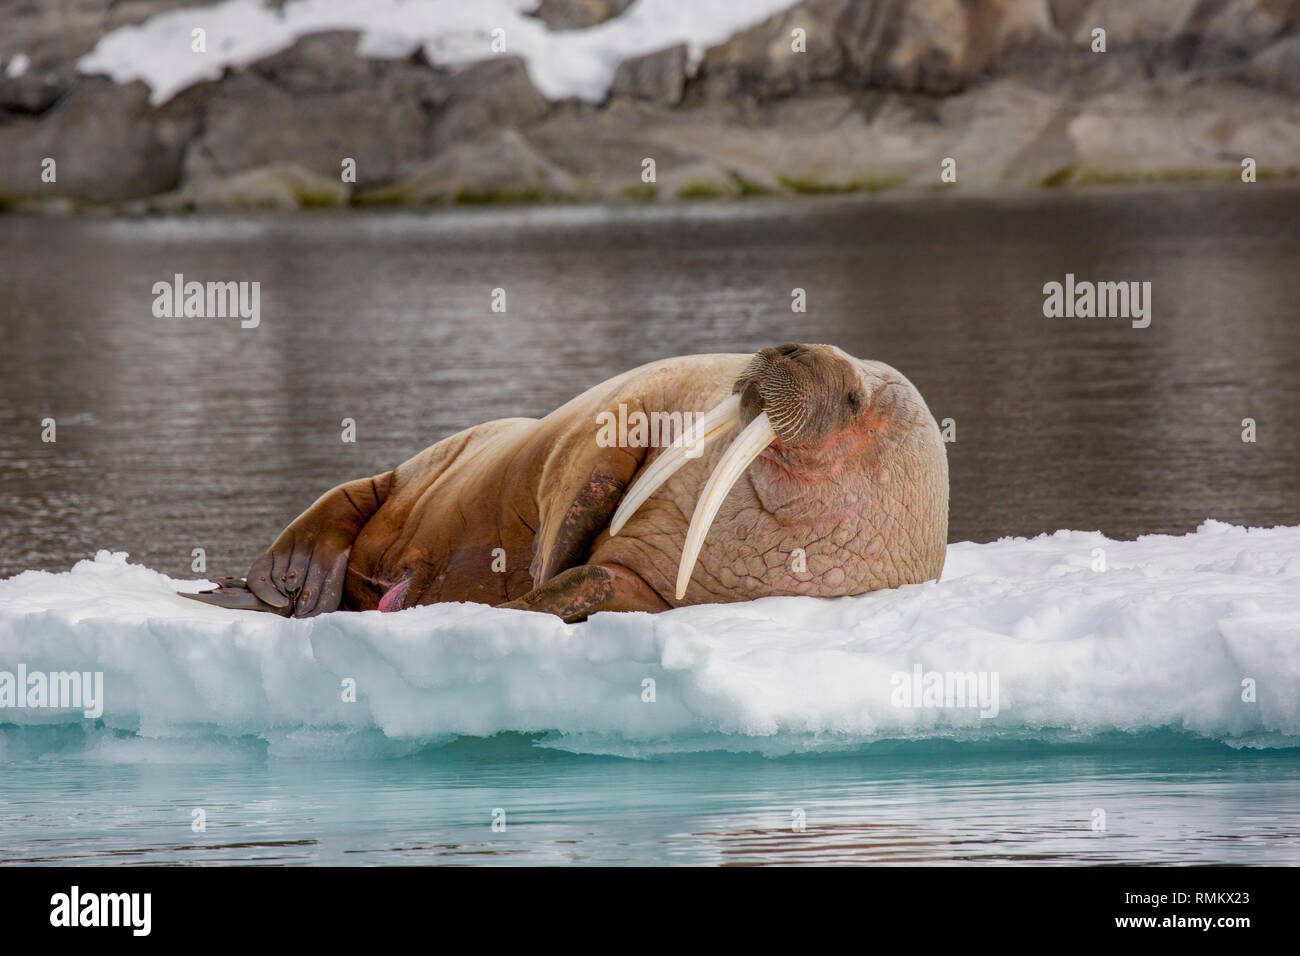 Atlantischen Walross (Odobenus rosmarus rosmarus) auf Eis. Dieses große, gesellige relative der Dichtung hat Stoßzähne, die einen Meter Länge erreichen kann. Beide Stockfoto